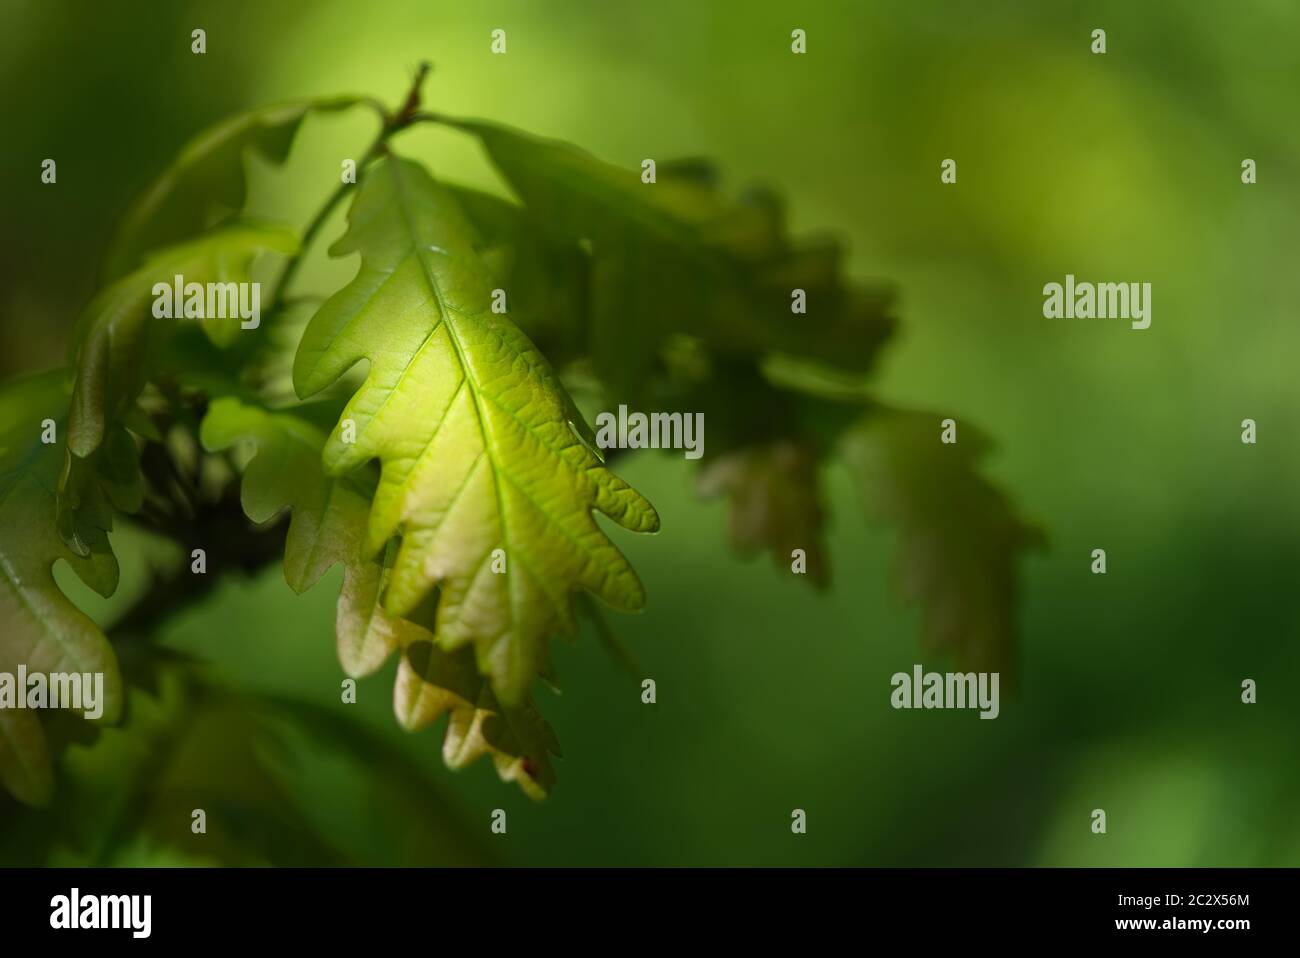 Detail von grünem Eichenblatt des jungen Quercus robur von der Sonne beleuchtet. Allgemein bekannt als Eiche, Stieleiche, europäische oder englische Eiche. Sonniger Tag. Stockfoto